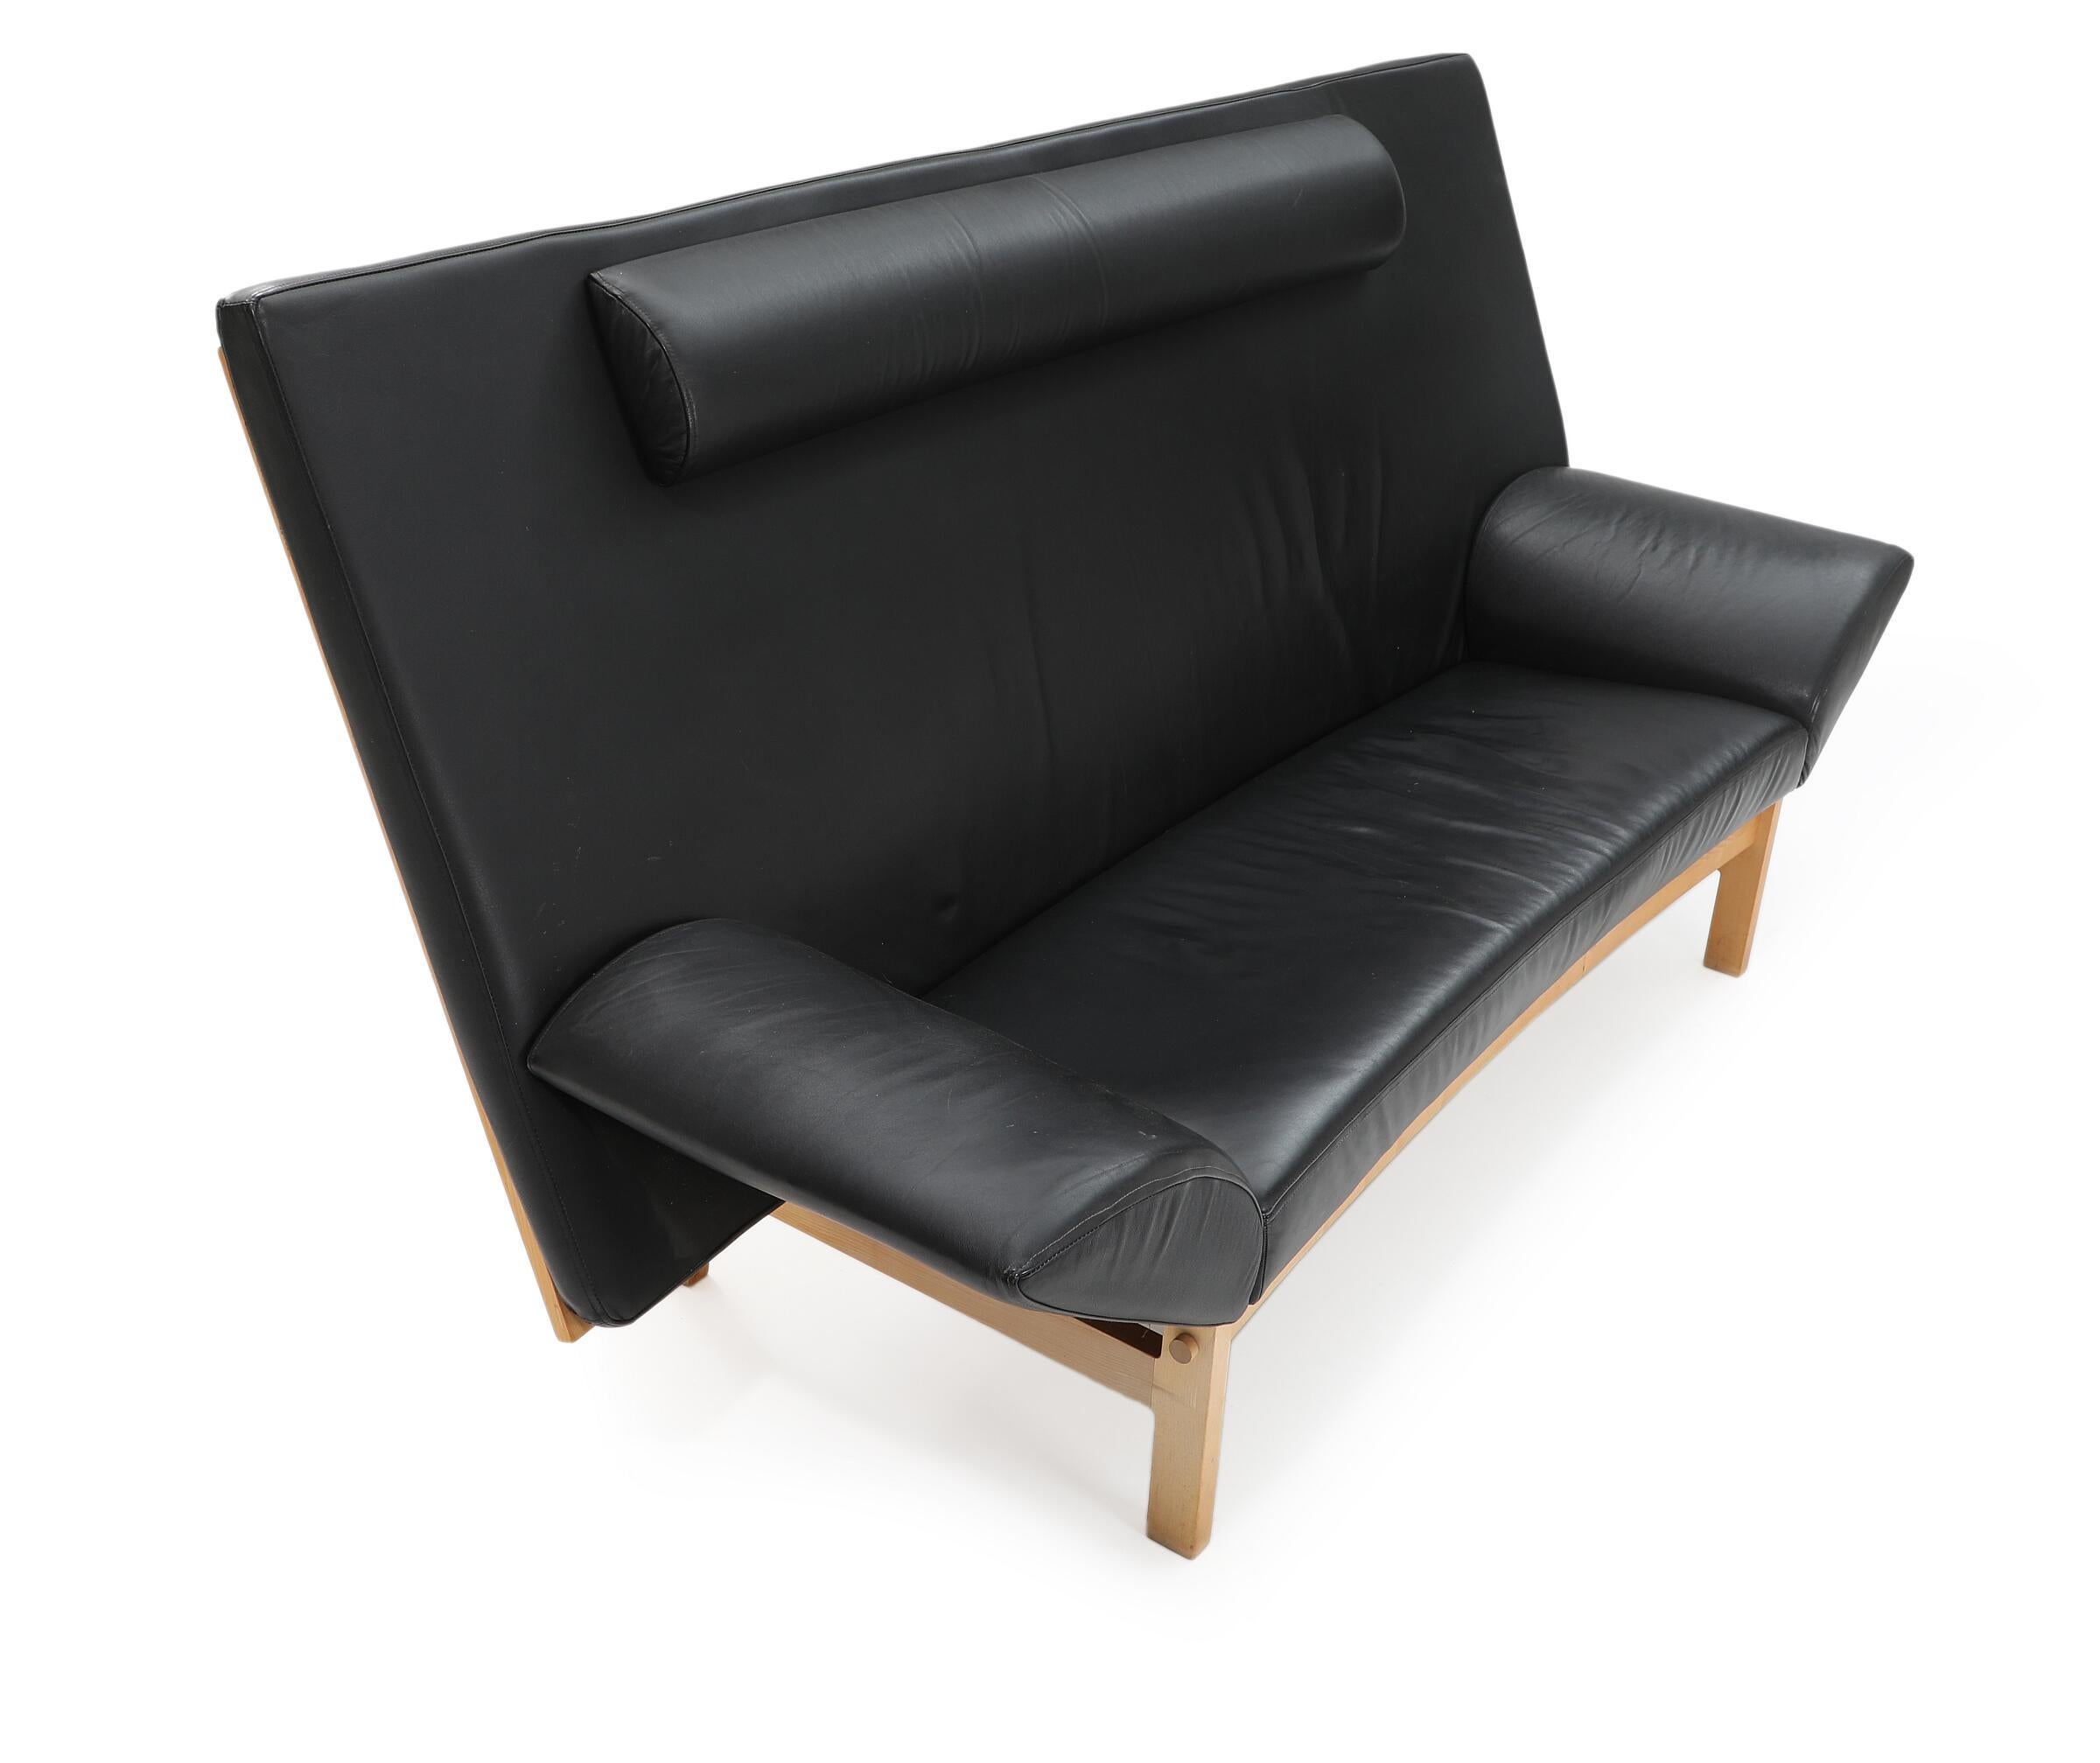 Dreisitzer-Sofa mit Gestell aus Ahornholz, gepolstert mit schwarzem Leder. Modell GE 299. Hergestellt und gekennzeichnet von Getama.